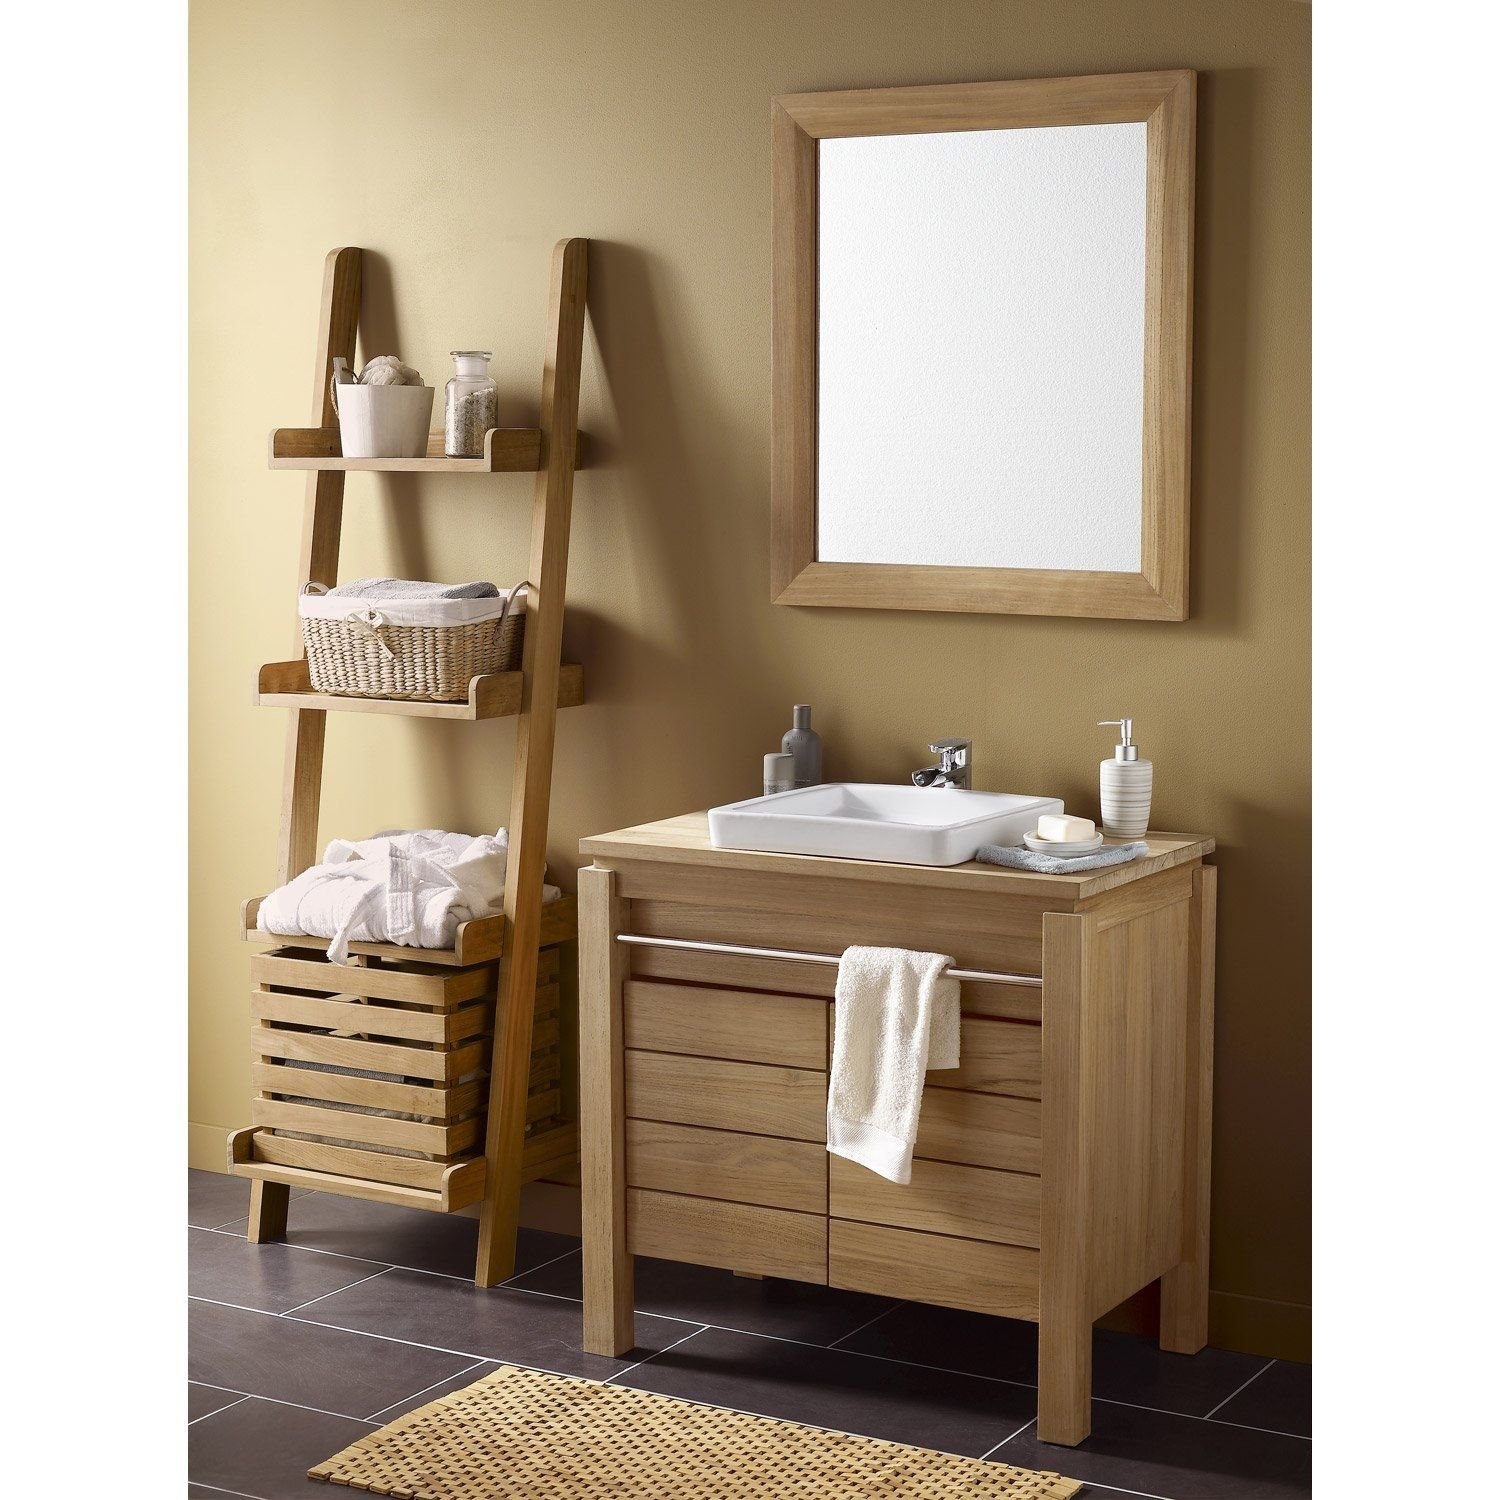 Леруа мерлен шкаф для ванной. Мебель для ванной ретро Леруа Мерлен. Мебель в ванную комнату. Деревянная мебель для ванной. Шкафчик в ванную из дерева.